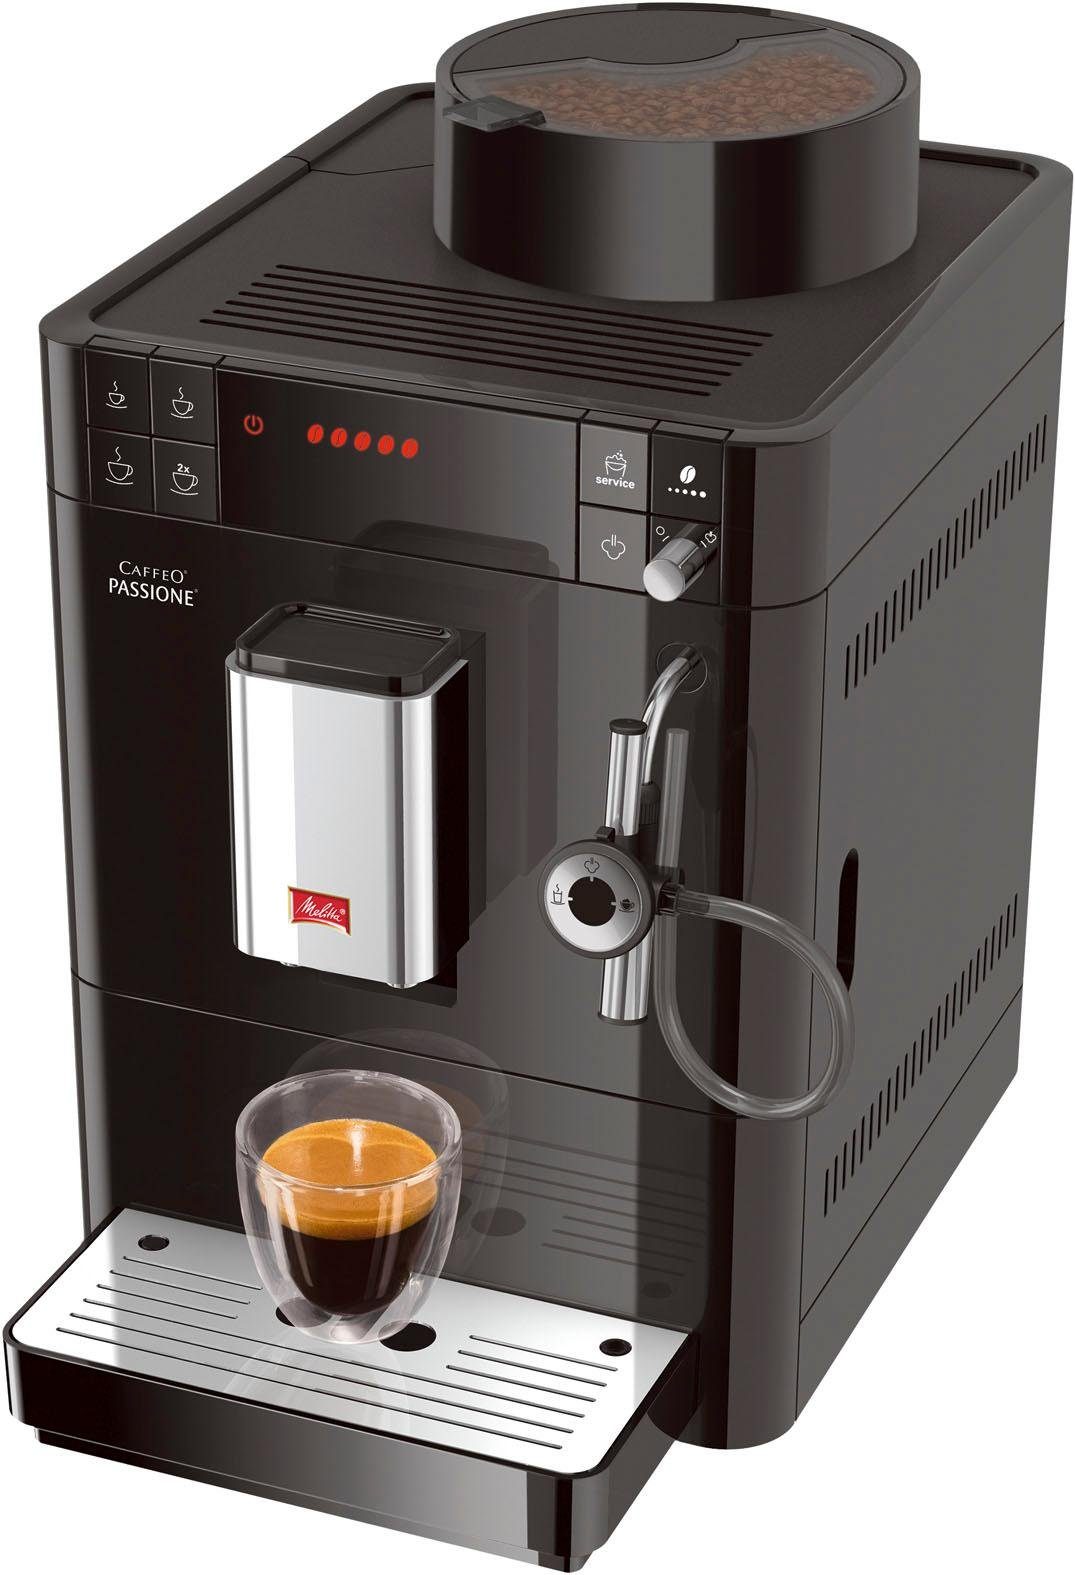 Entkalkung & Melitta Passione® F53/0-102 Service-Taste für frisch Tassengenau gemahlen, schwarz, Kaffeevollautomat